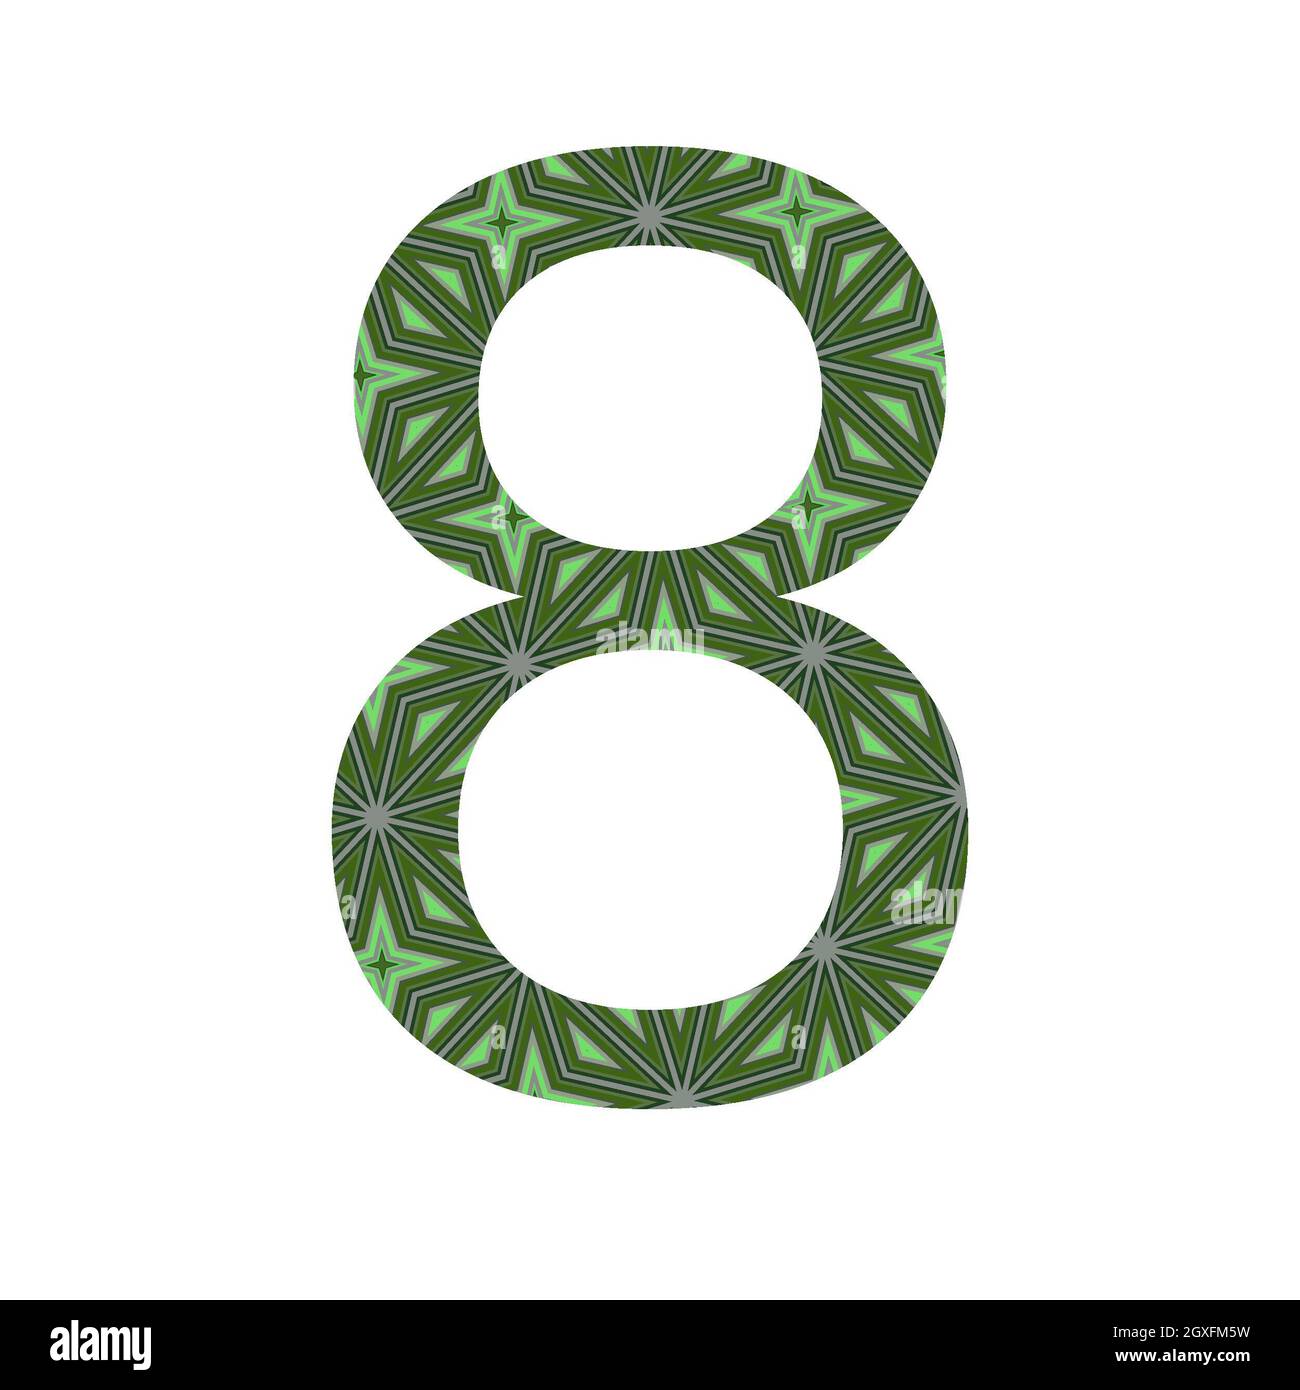 numero 8 dell'alfabeto realizzato con un motivo di stelle verdi, isolato su sfondo bianco Foto Stock